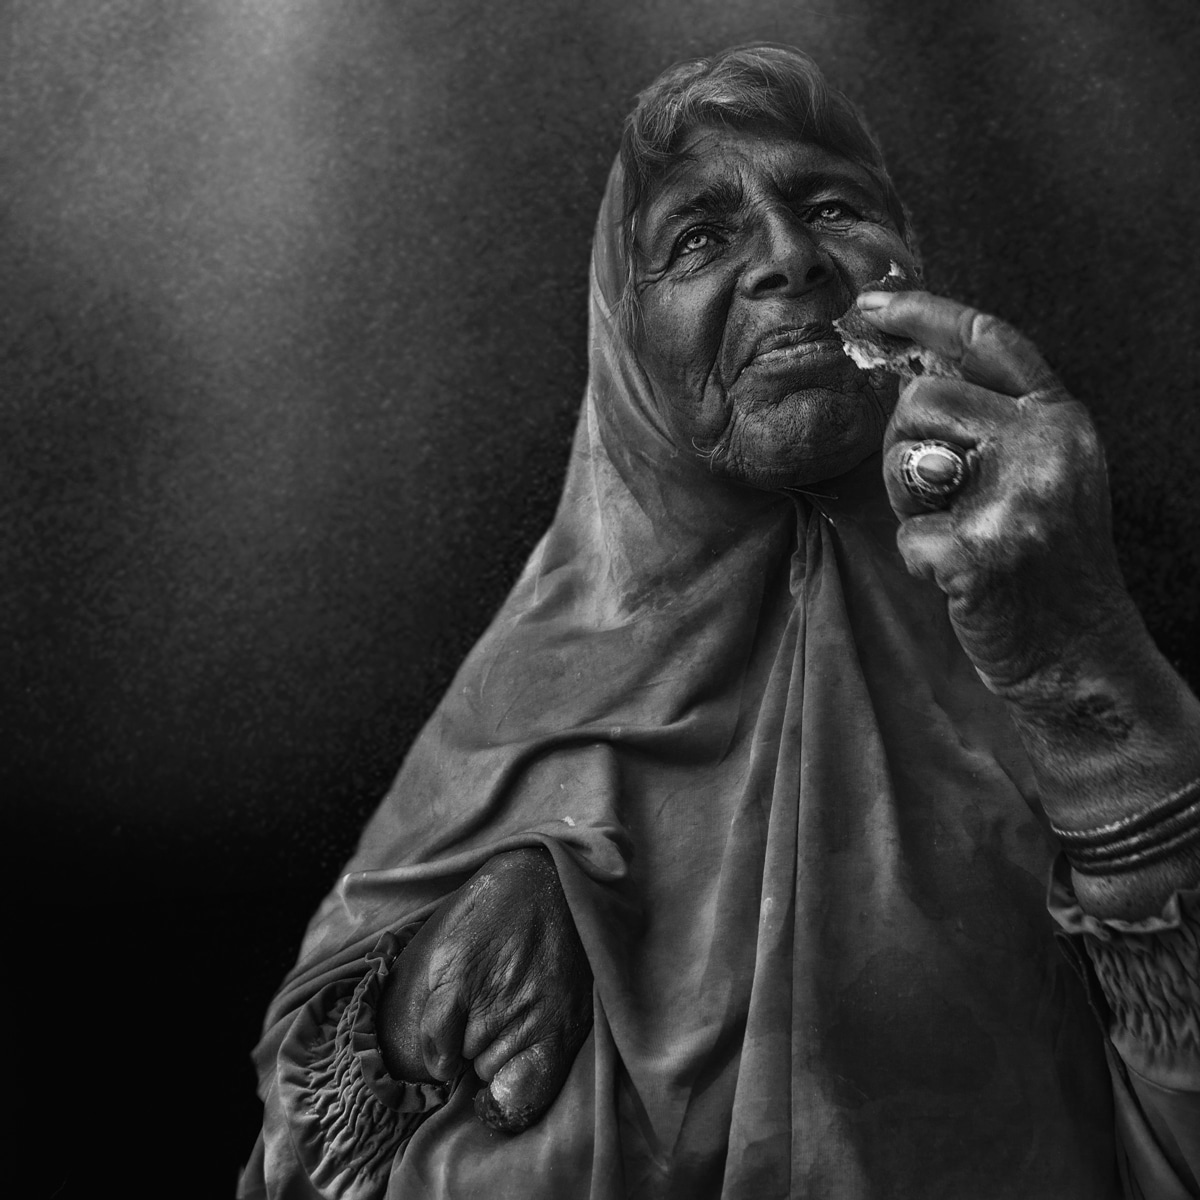 Street Portraits in Algeria by Imed Kolli